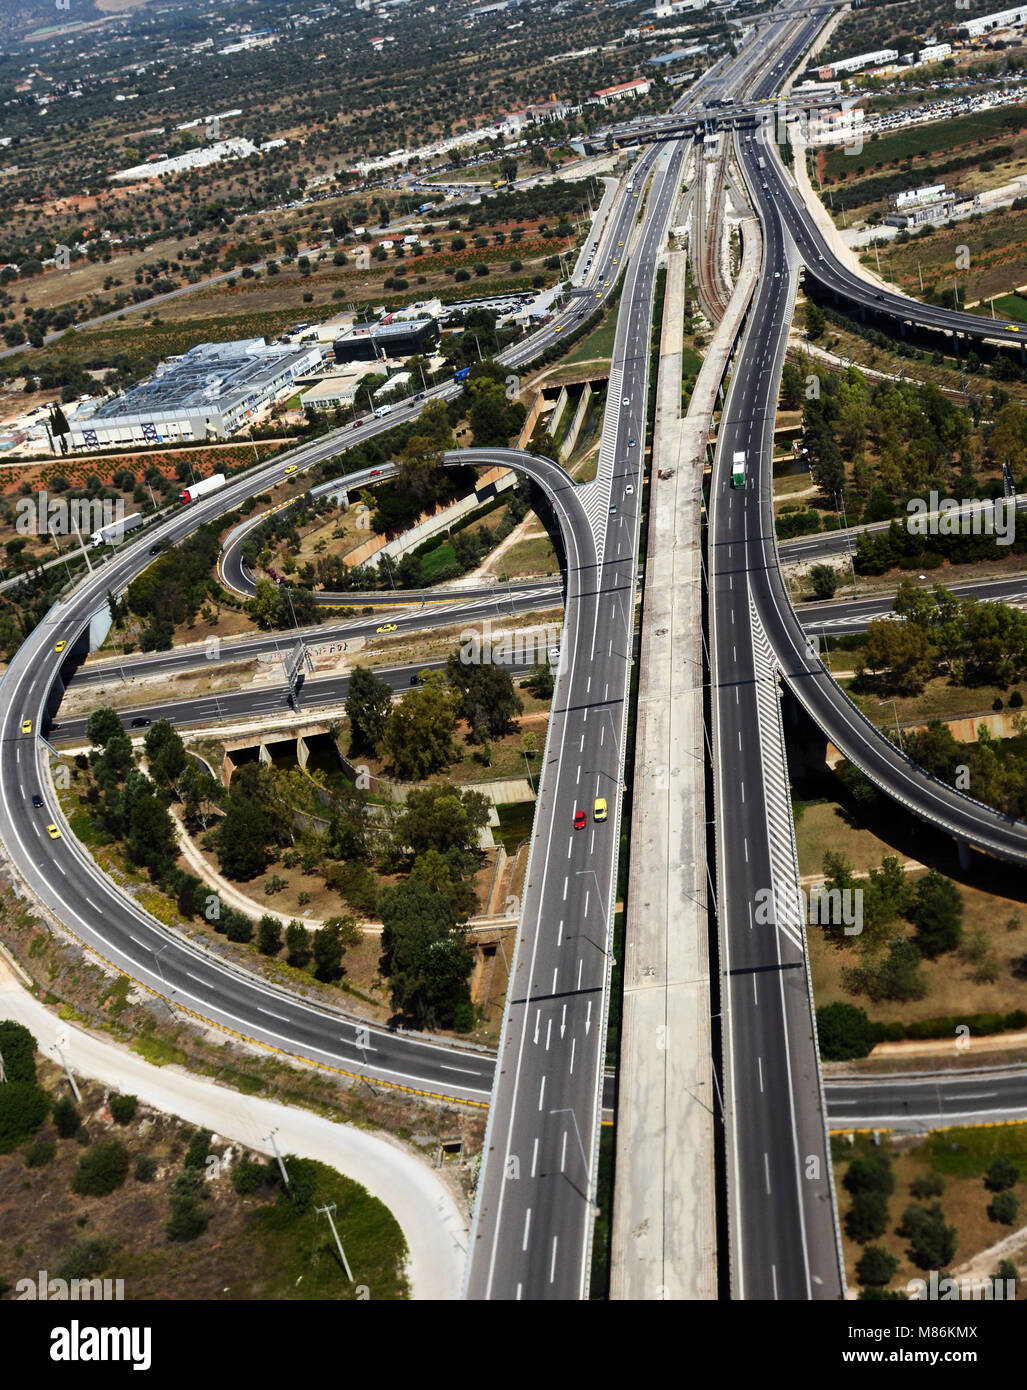 Vue aérienne d'une grande autoroute reliant Athènes et l'aéroport international d'Athènes. Banque D'Images